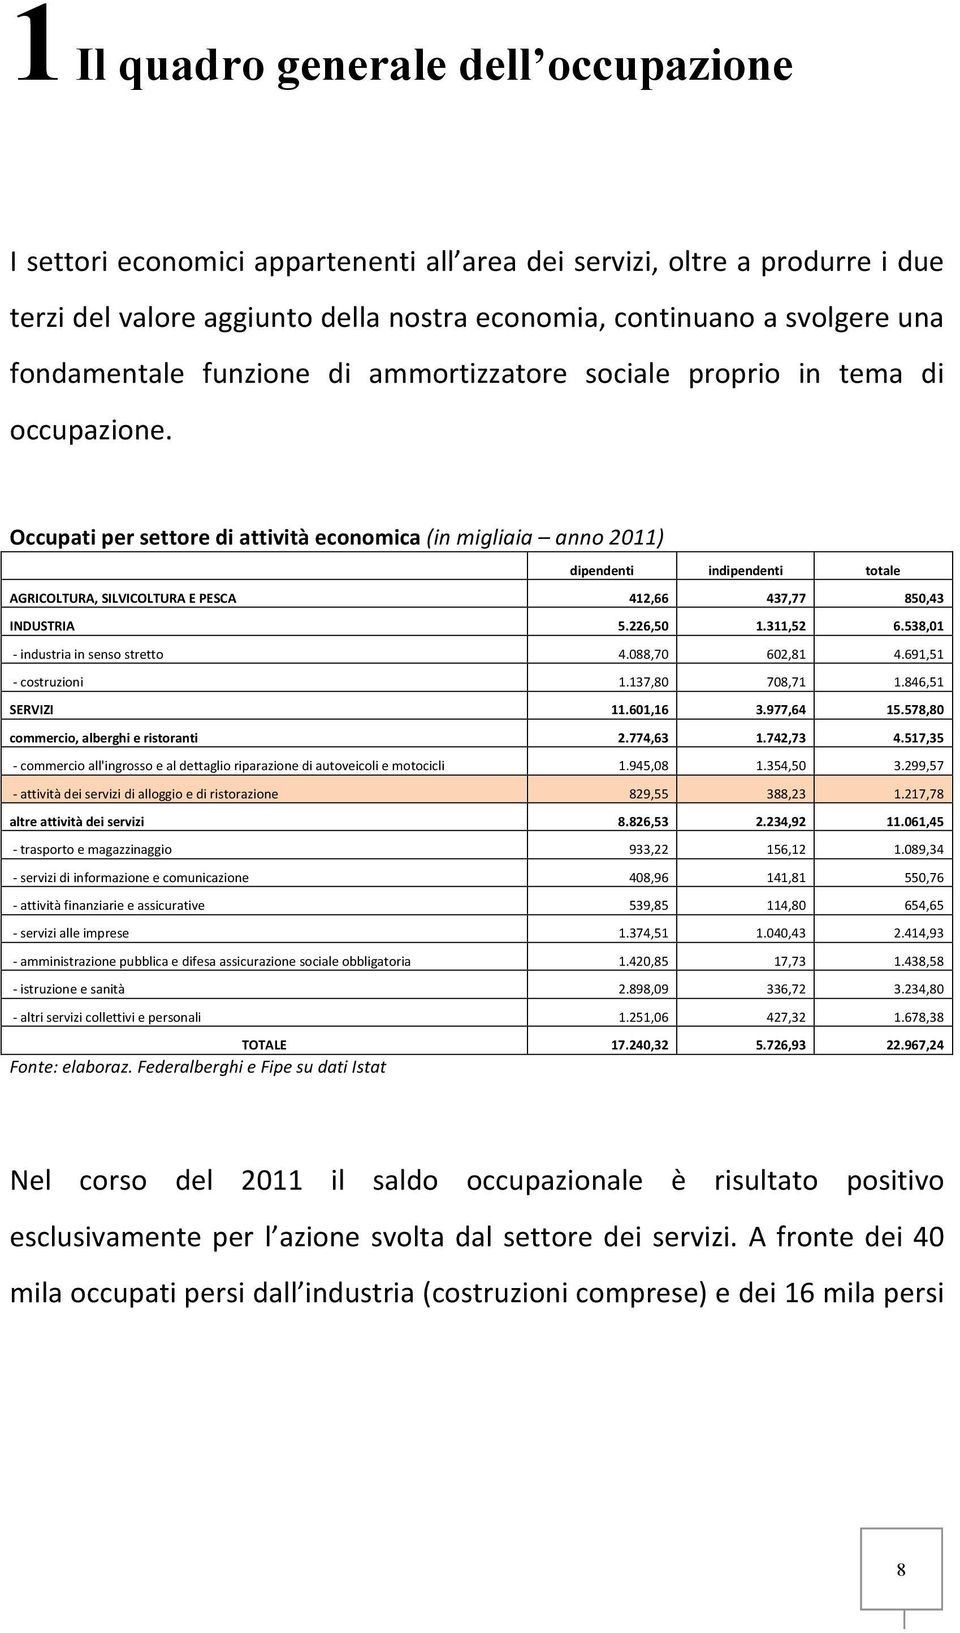 Occupati per settore di attività economica (in migliaia anno 2011) dipendenti indipendenti totale AGRICOLTURA, SILVICOLTURA E PESCA 412,66 437,77 850,43 INDUSTRIA 5.226,50 1.311,52 6.